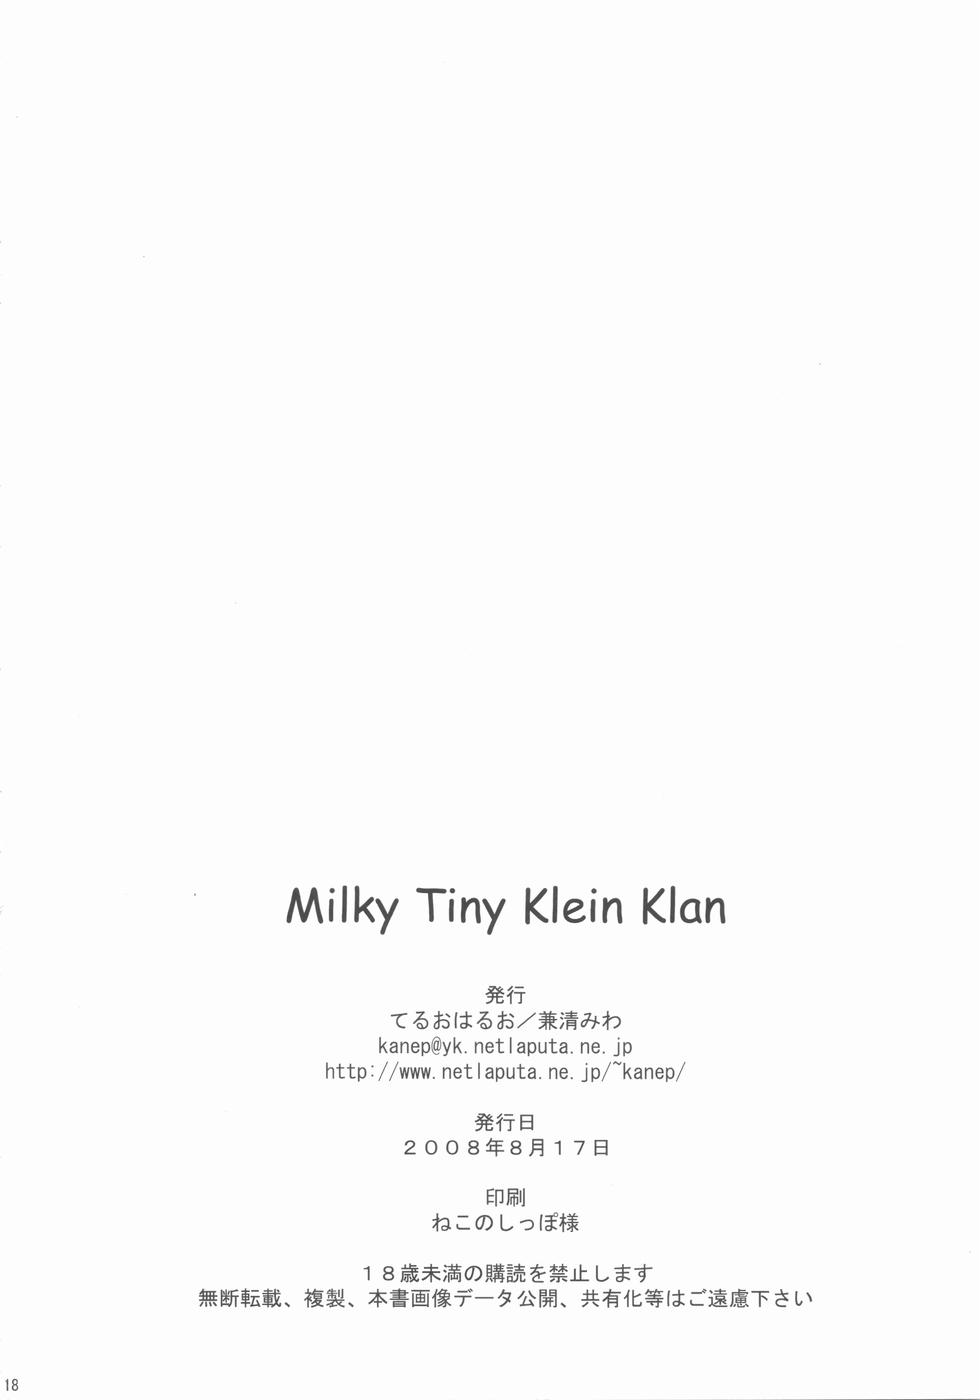 Milky Tiny KLEIN KLAN 19